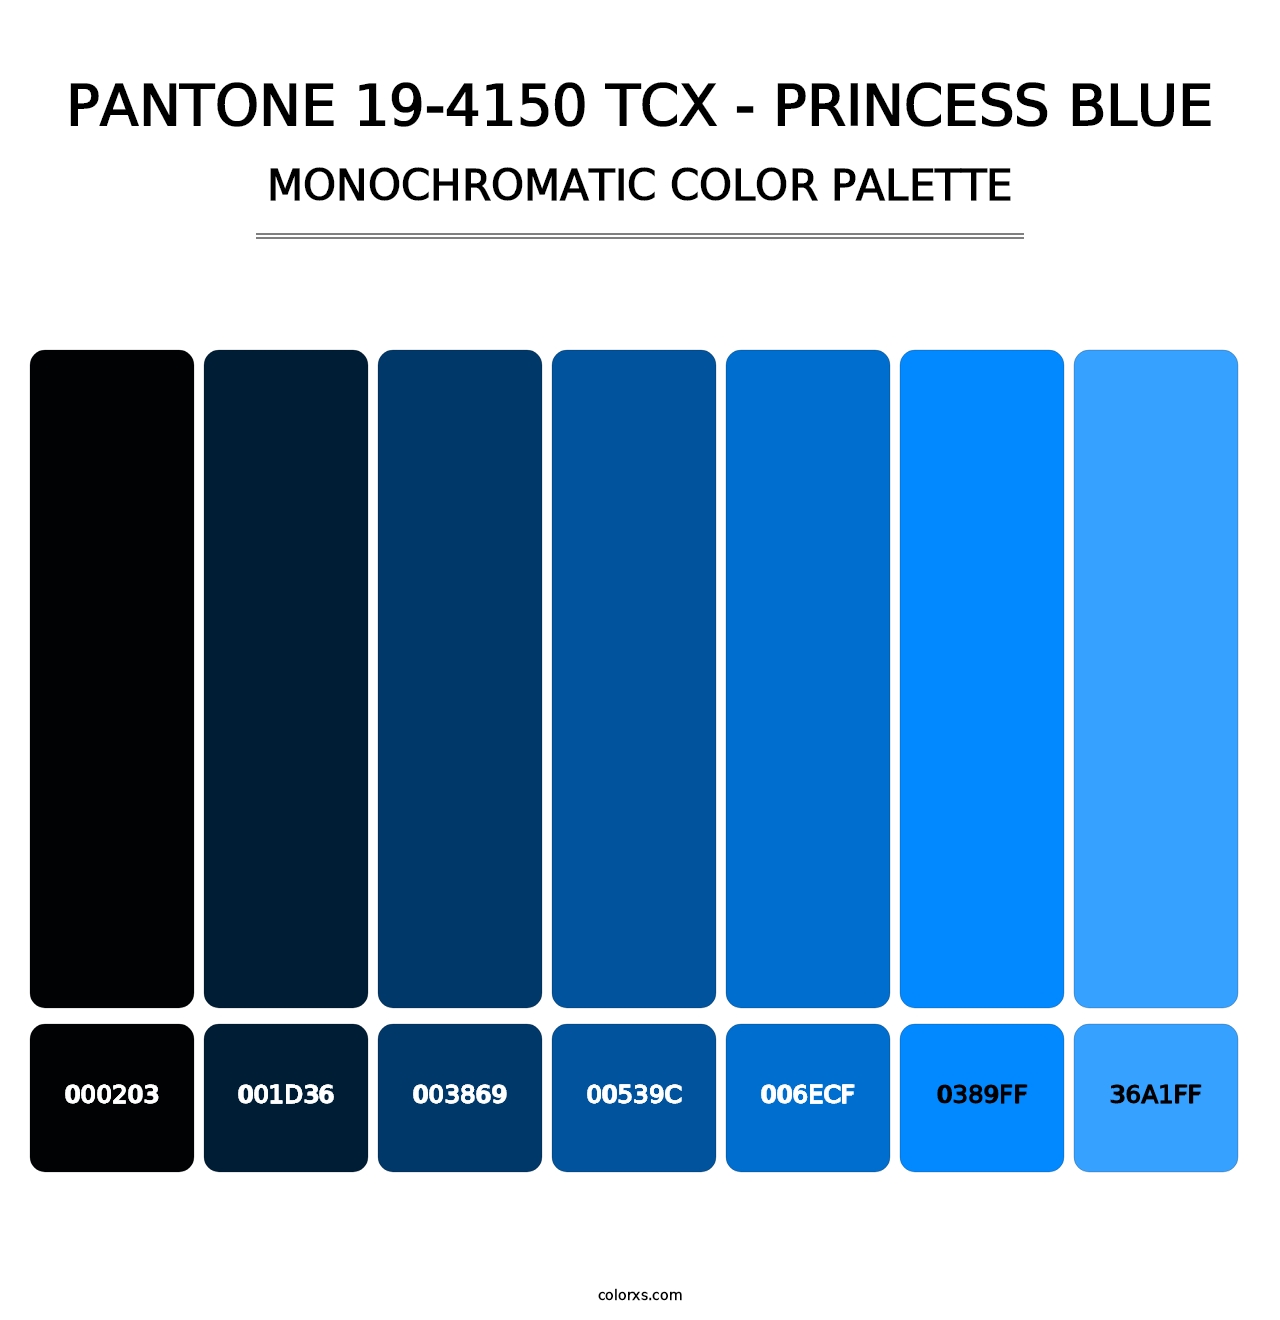 PANTONE 19-4150 TCX - Princess Blue - Monochromatic Color Palette